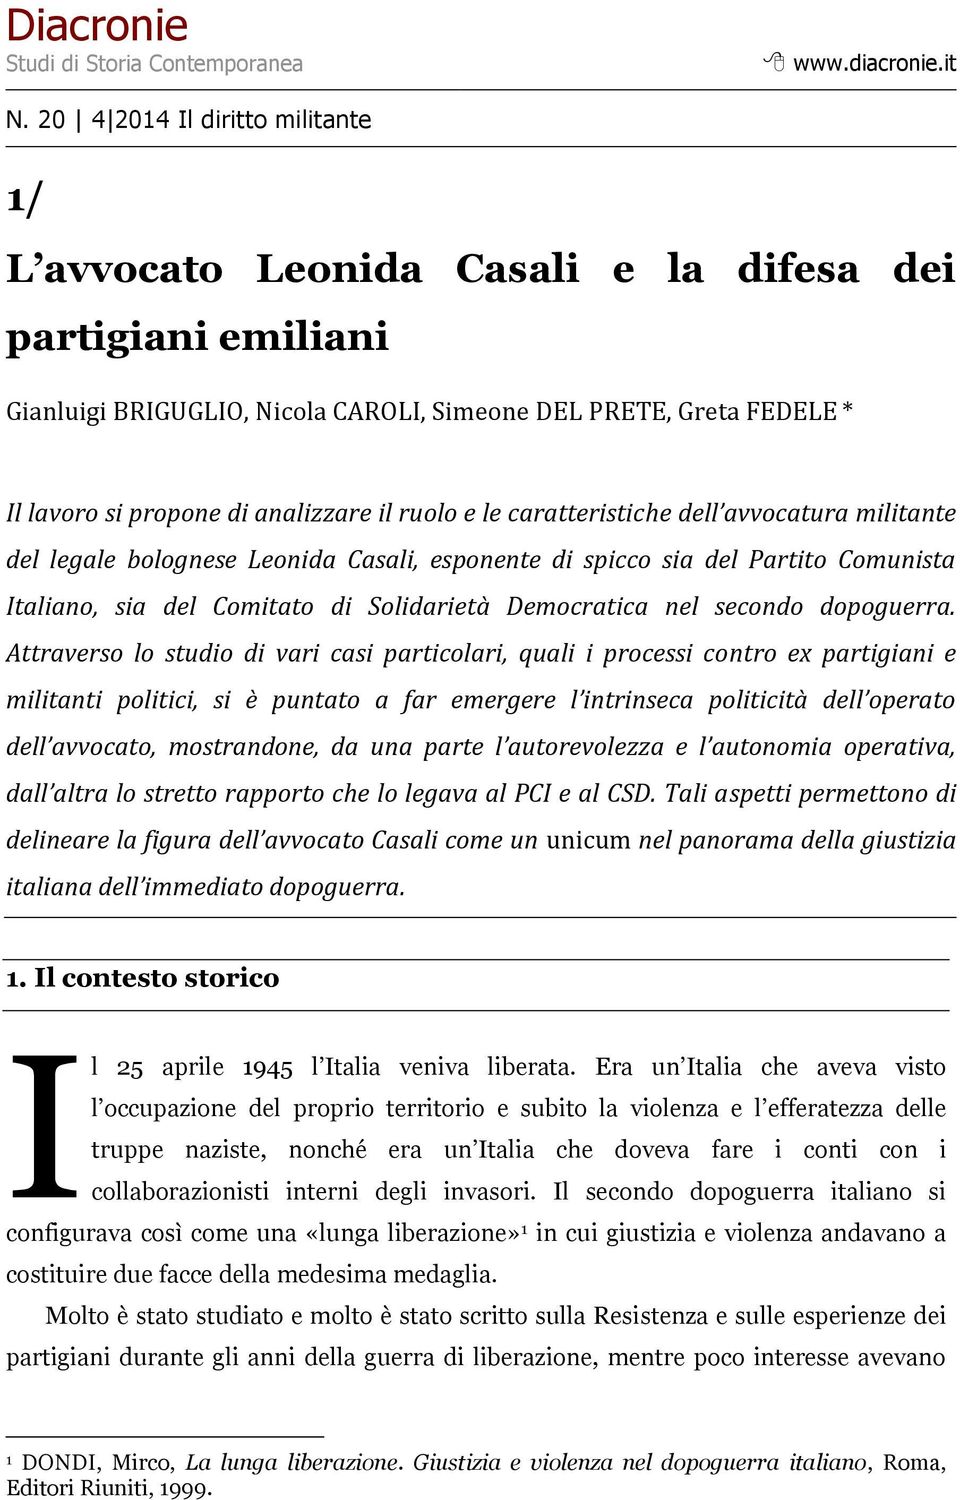 analizzare il ruolo e le caratteristiche dell avvocatura militante del legale bolognese Leonida Casali, esponente di spicco sia del Partito Comunista Italiano, sia del Comitato di Solidarietà